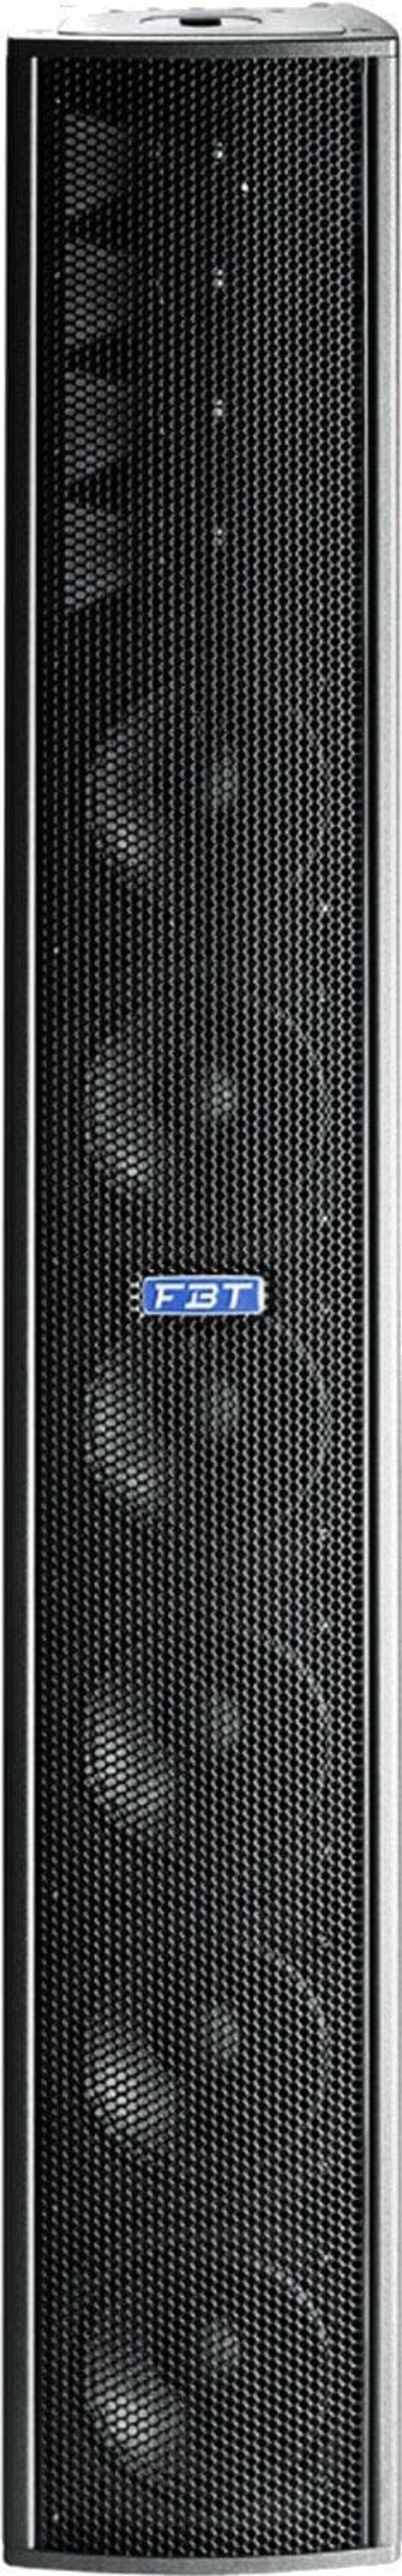 FBT FBT CLA Vertus 604 A Aktivni zvočnik